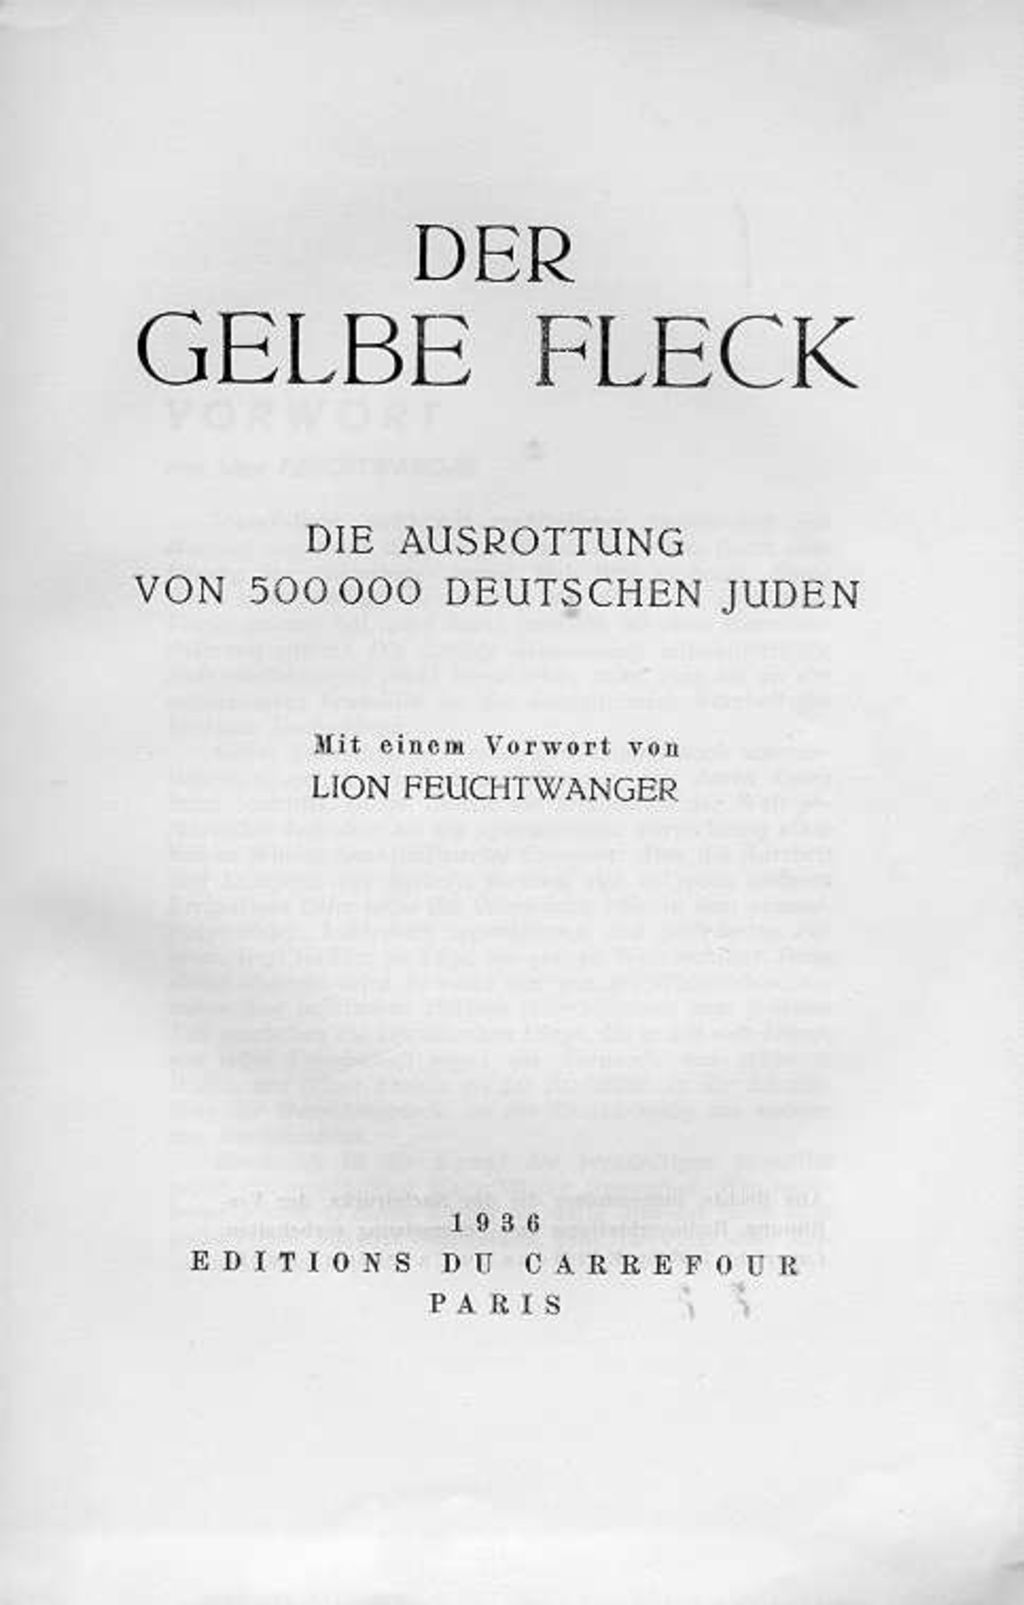 Exponat: Buch: Feuchtwanger, Lion (Vorwort) "Der gelbe Fleck - Die Ausrottung von 500.000 deutschen Juden", 1936